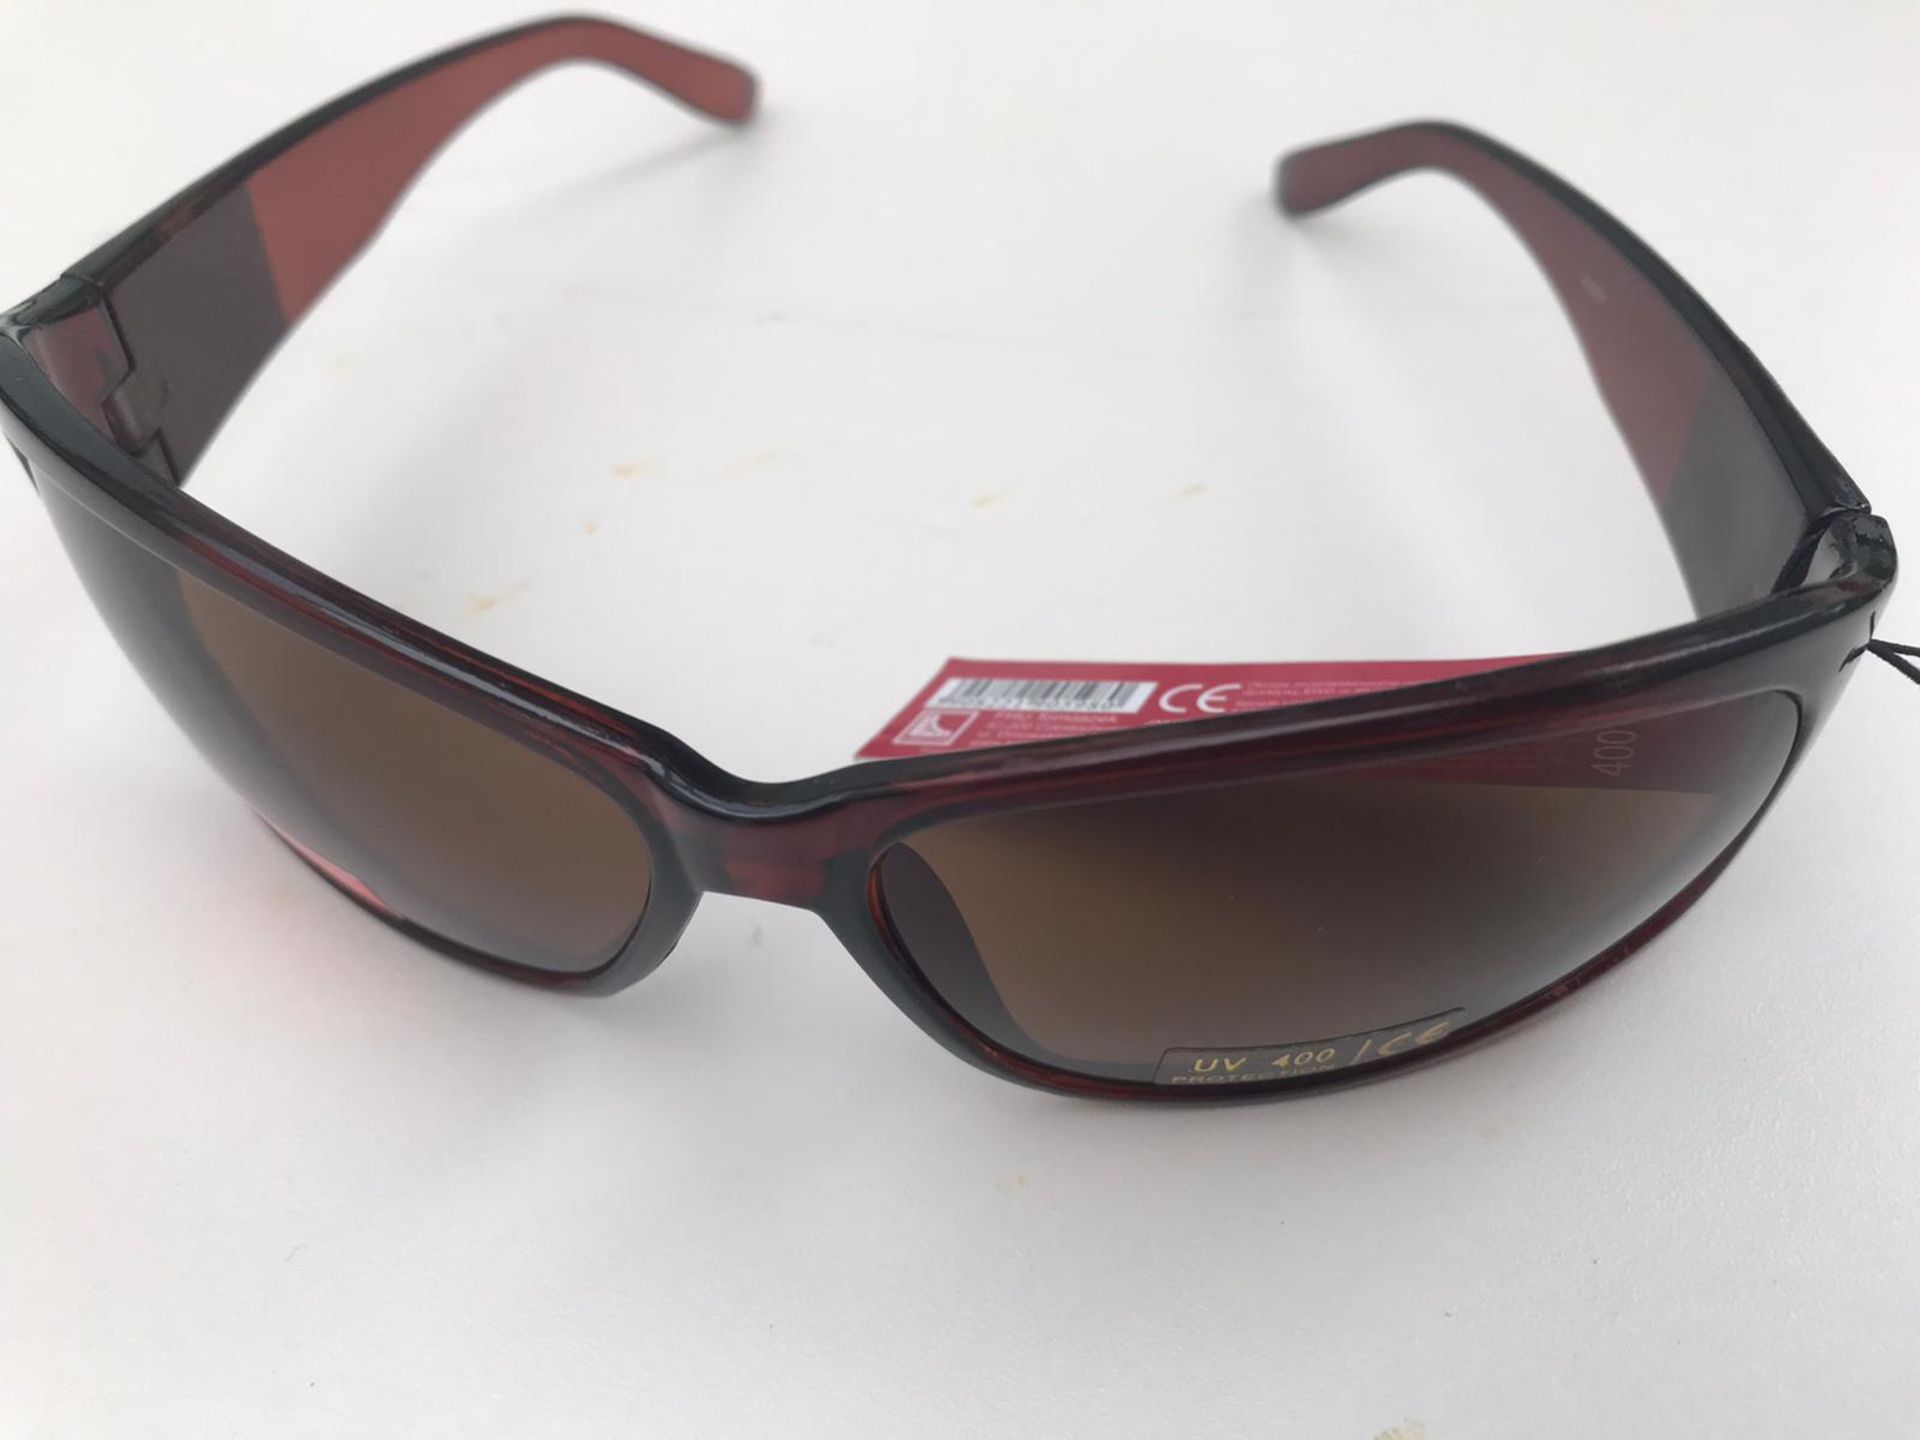 500x La Lu Branded Sunglasses | Various Styles | Unopened & Unused - Image 13 of 33